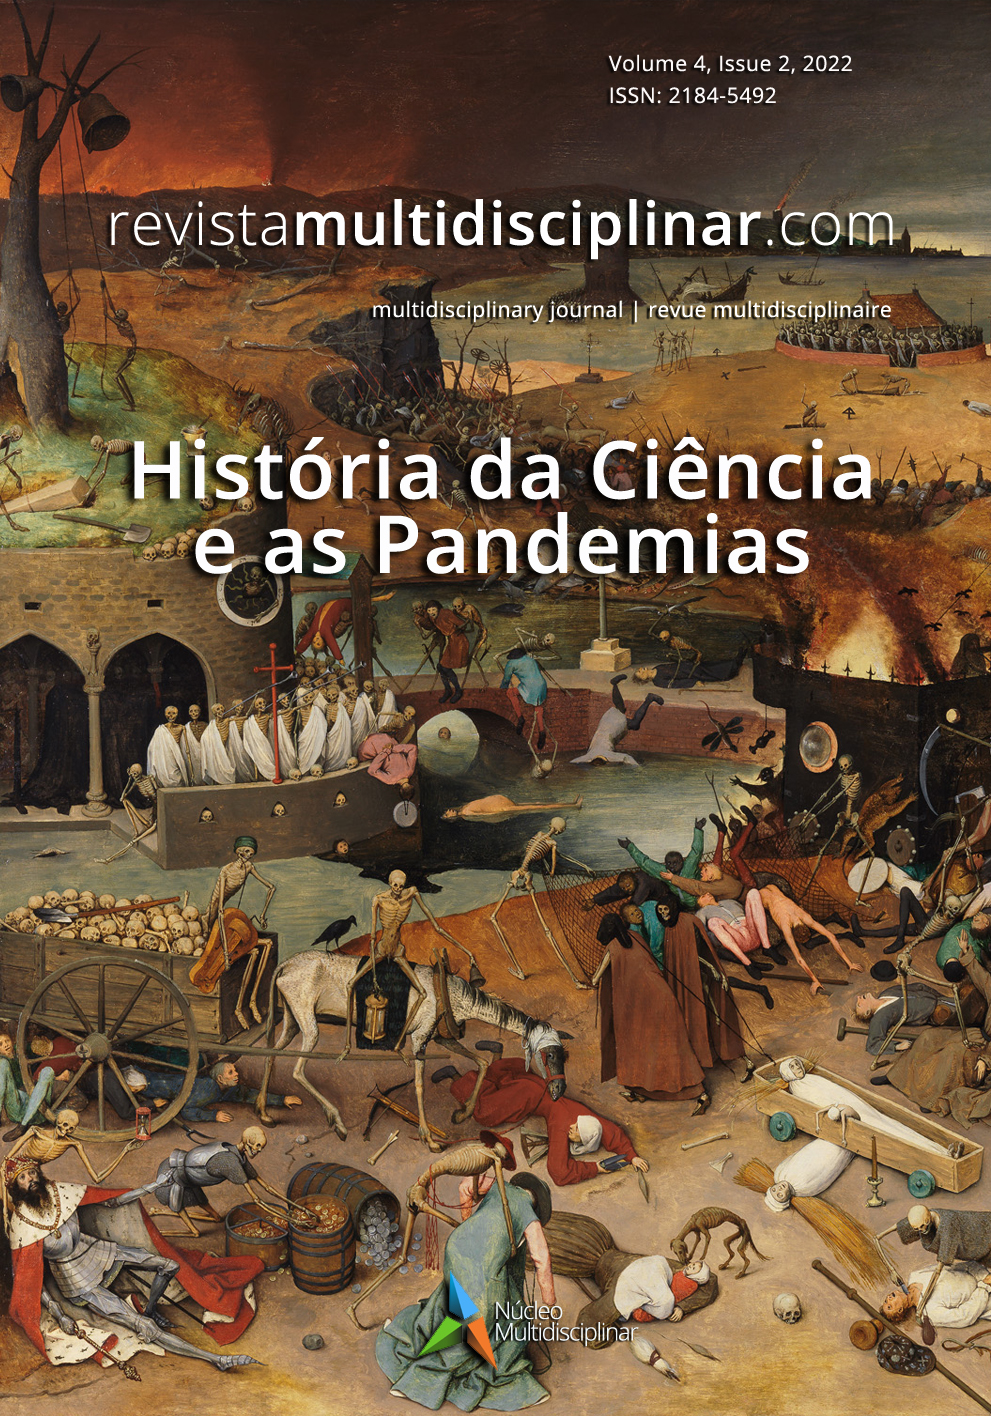 					Ver Vol. 4 Núm. 2 (2022): História da Ciência e as Pandemias
				